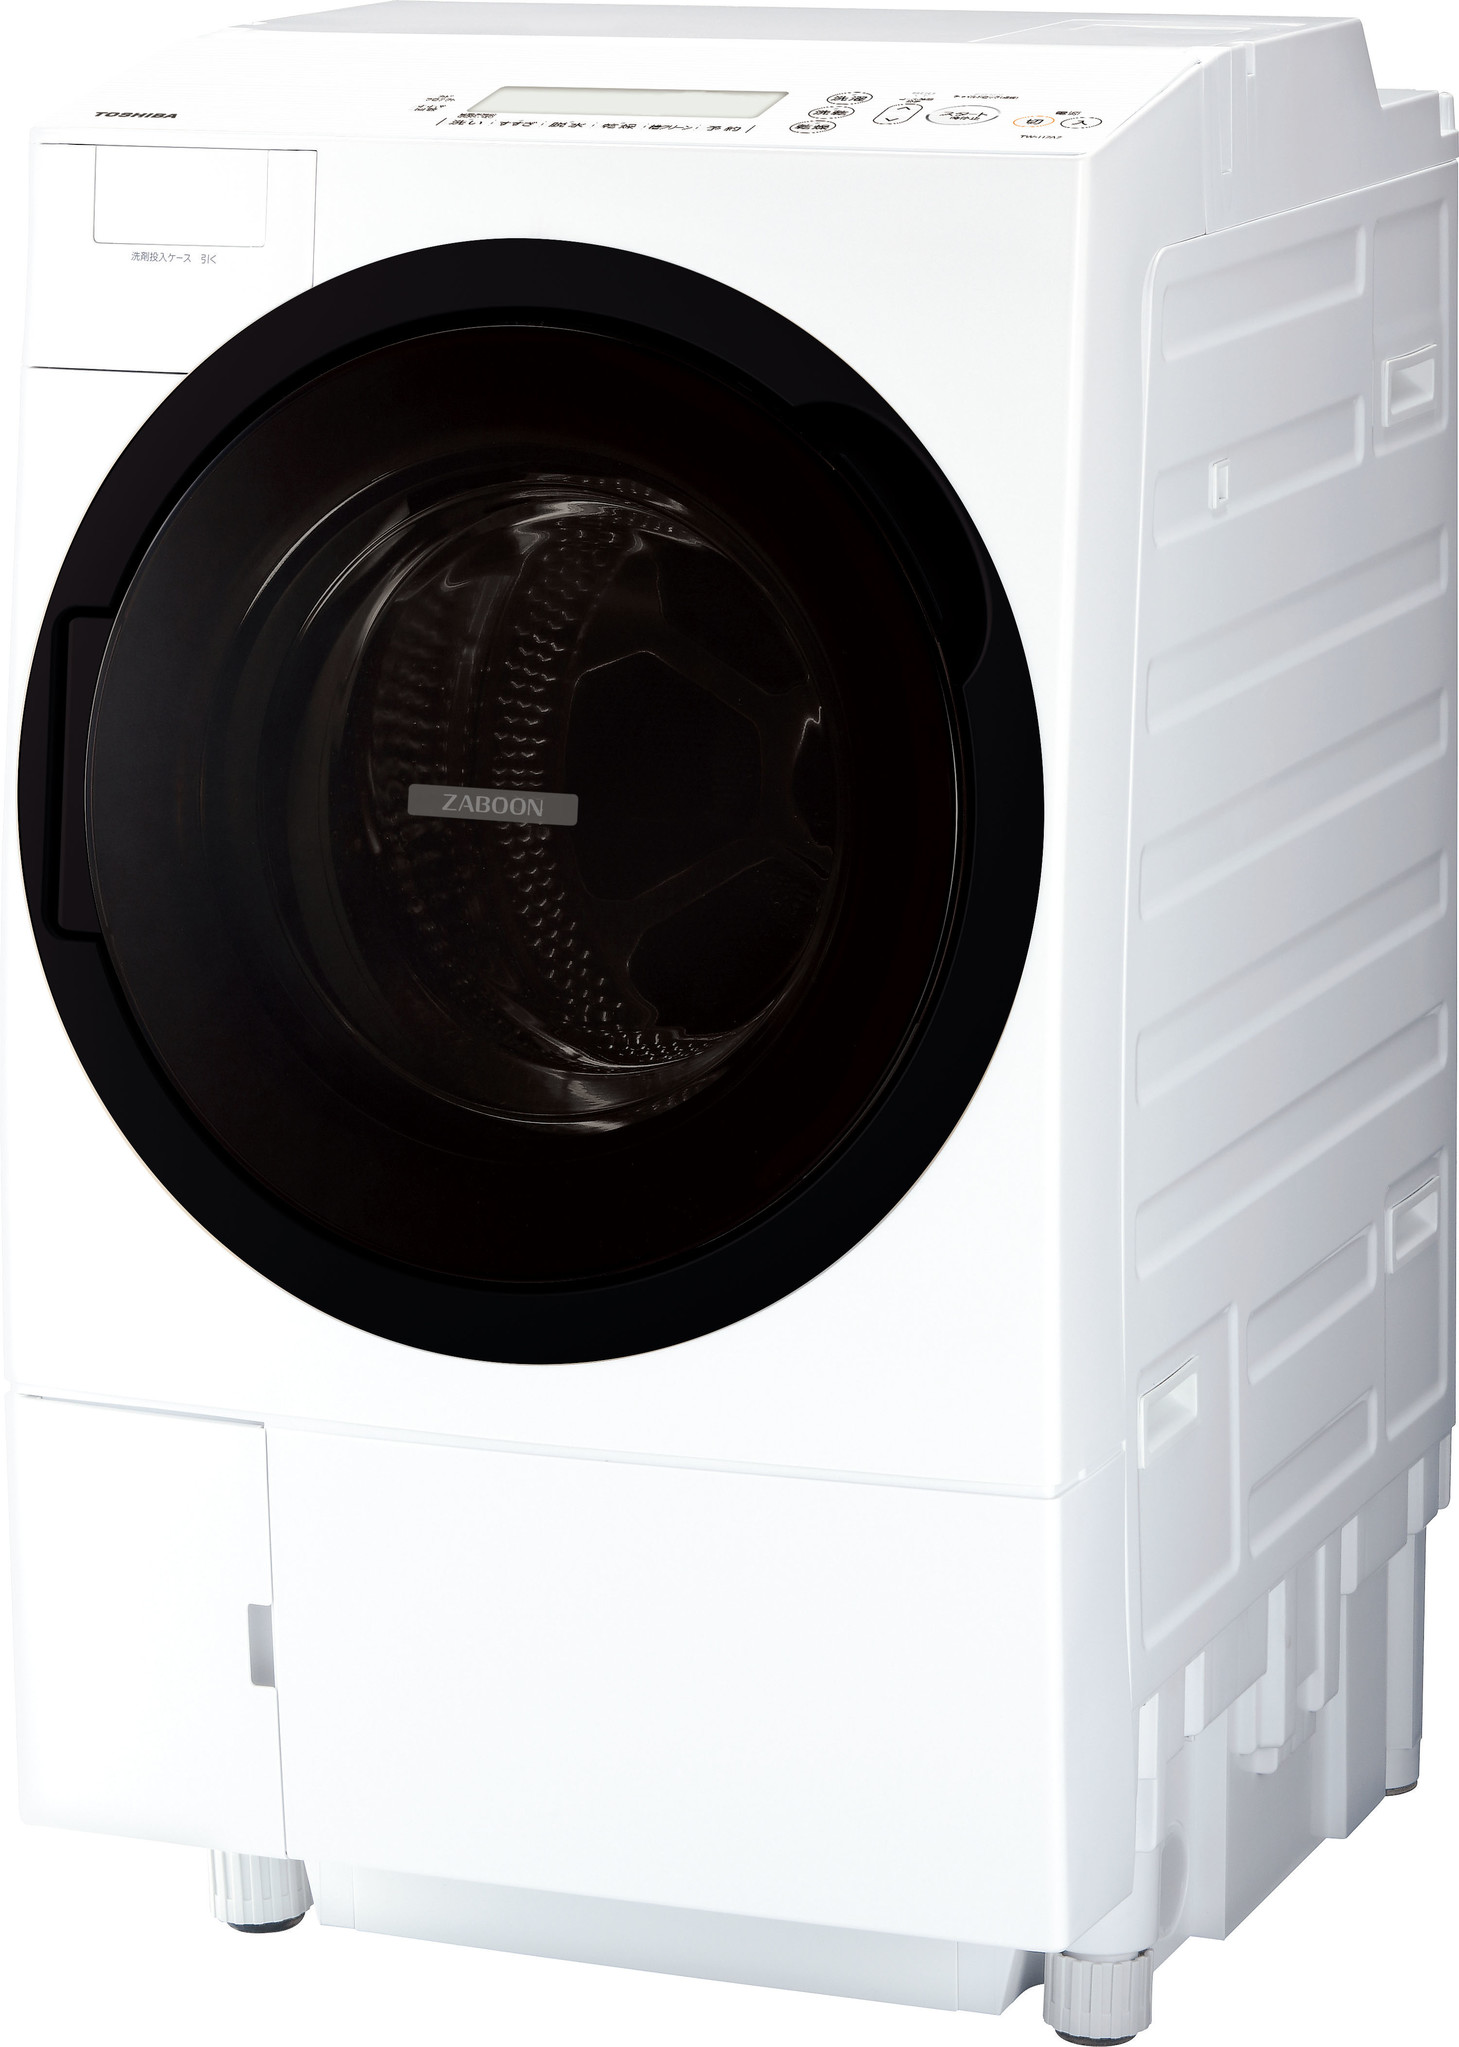 たっぷり乾燥できる業界最大7kgの乾燥容量！「ザブーン洗浄」搭載のドラム式洗濯乾燥機「TW-117A7L」発売｜東芝ライフスタイルのプレスリリース